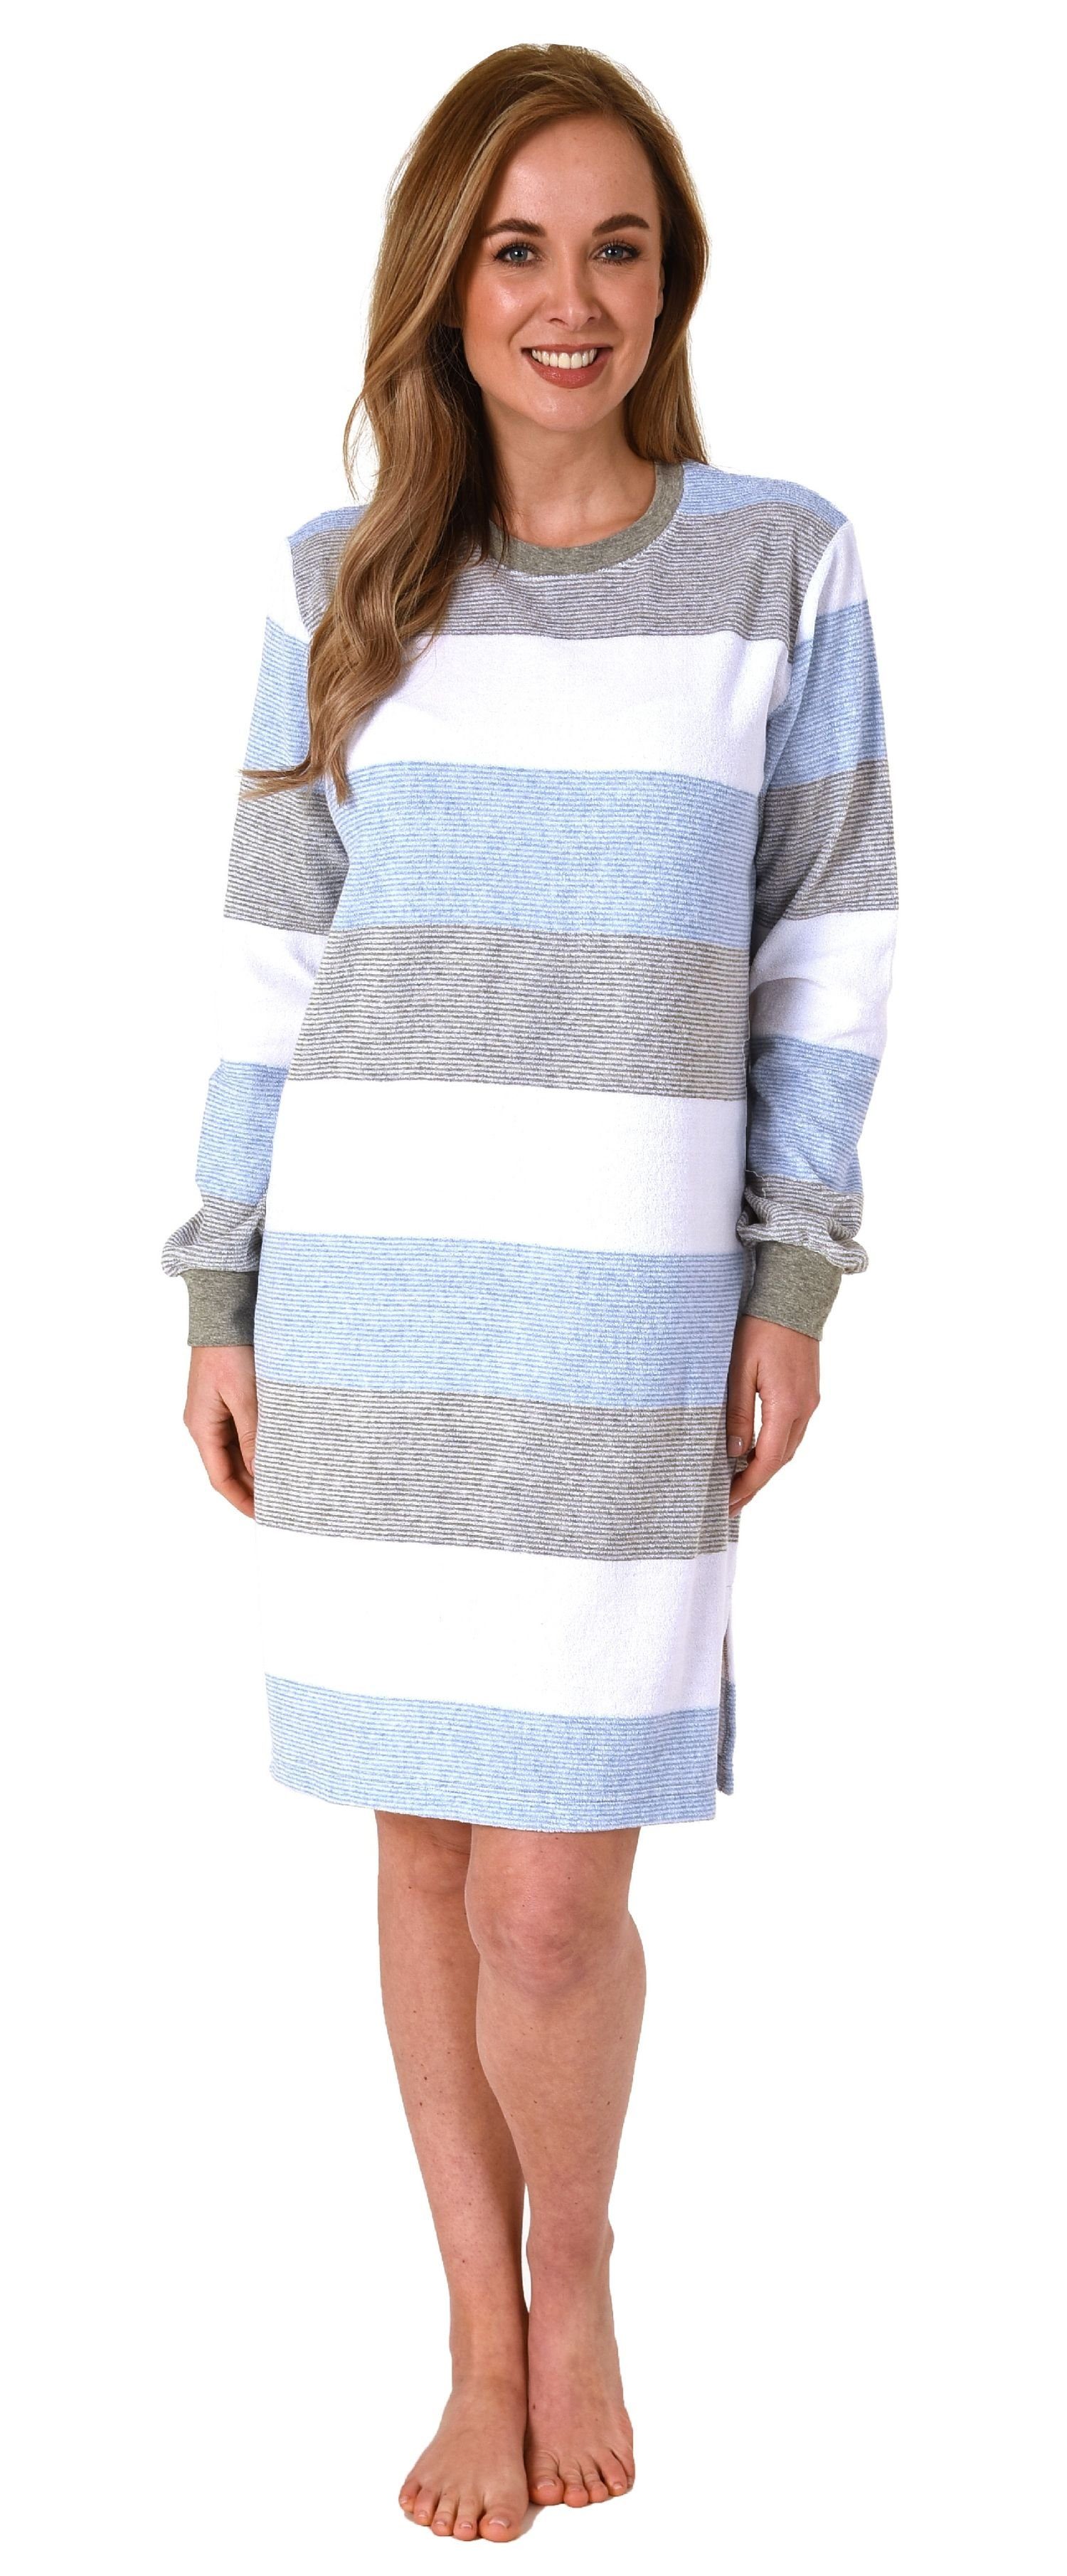 Normann Nachthemd Damen Nachthemd mit Block hellblau Bündchen Streifen langarm Look im